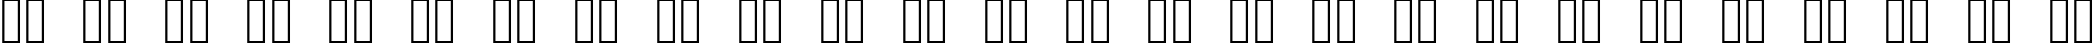 Пример написания английского алфавита шрифтом OpenSymbol